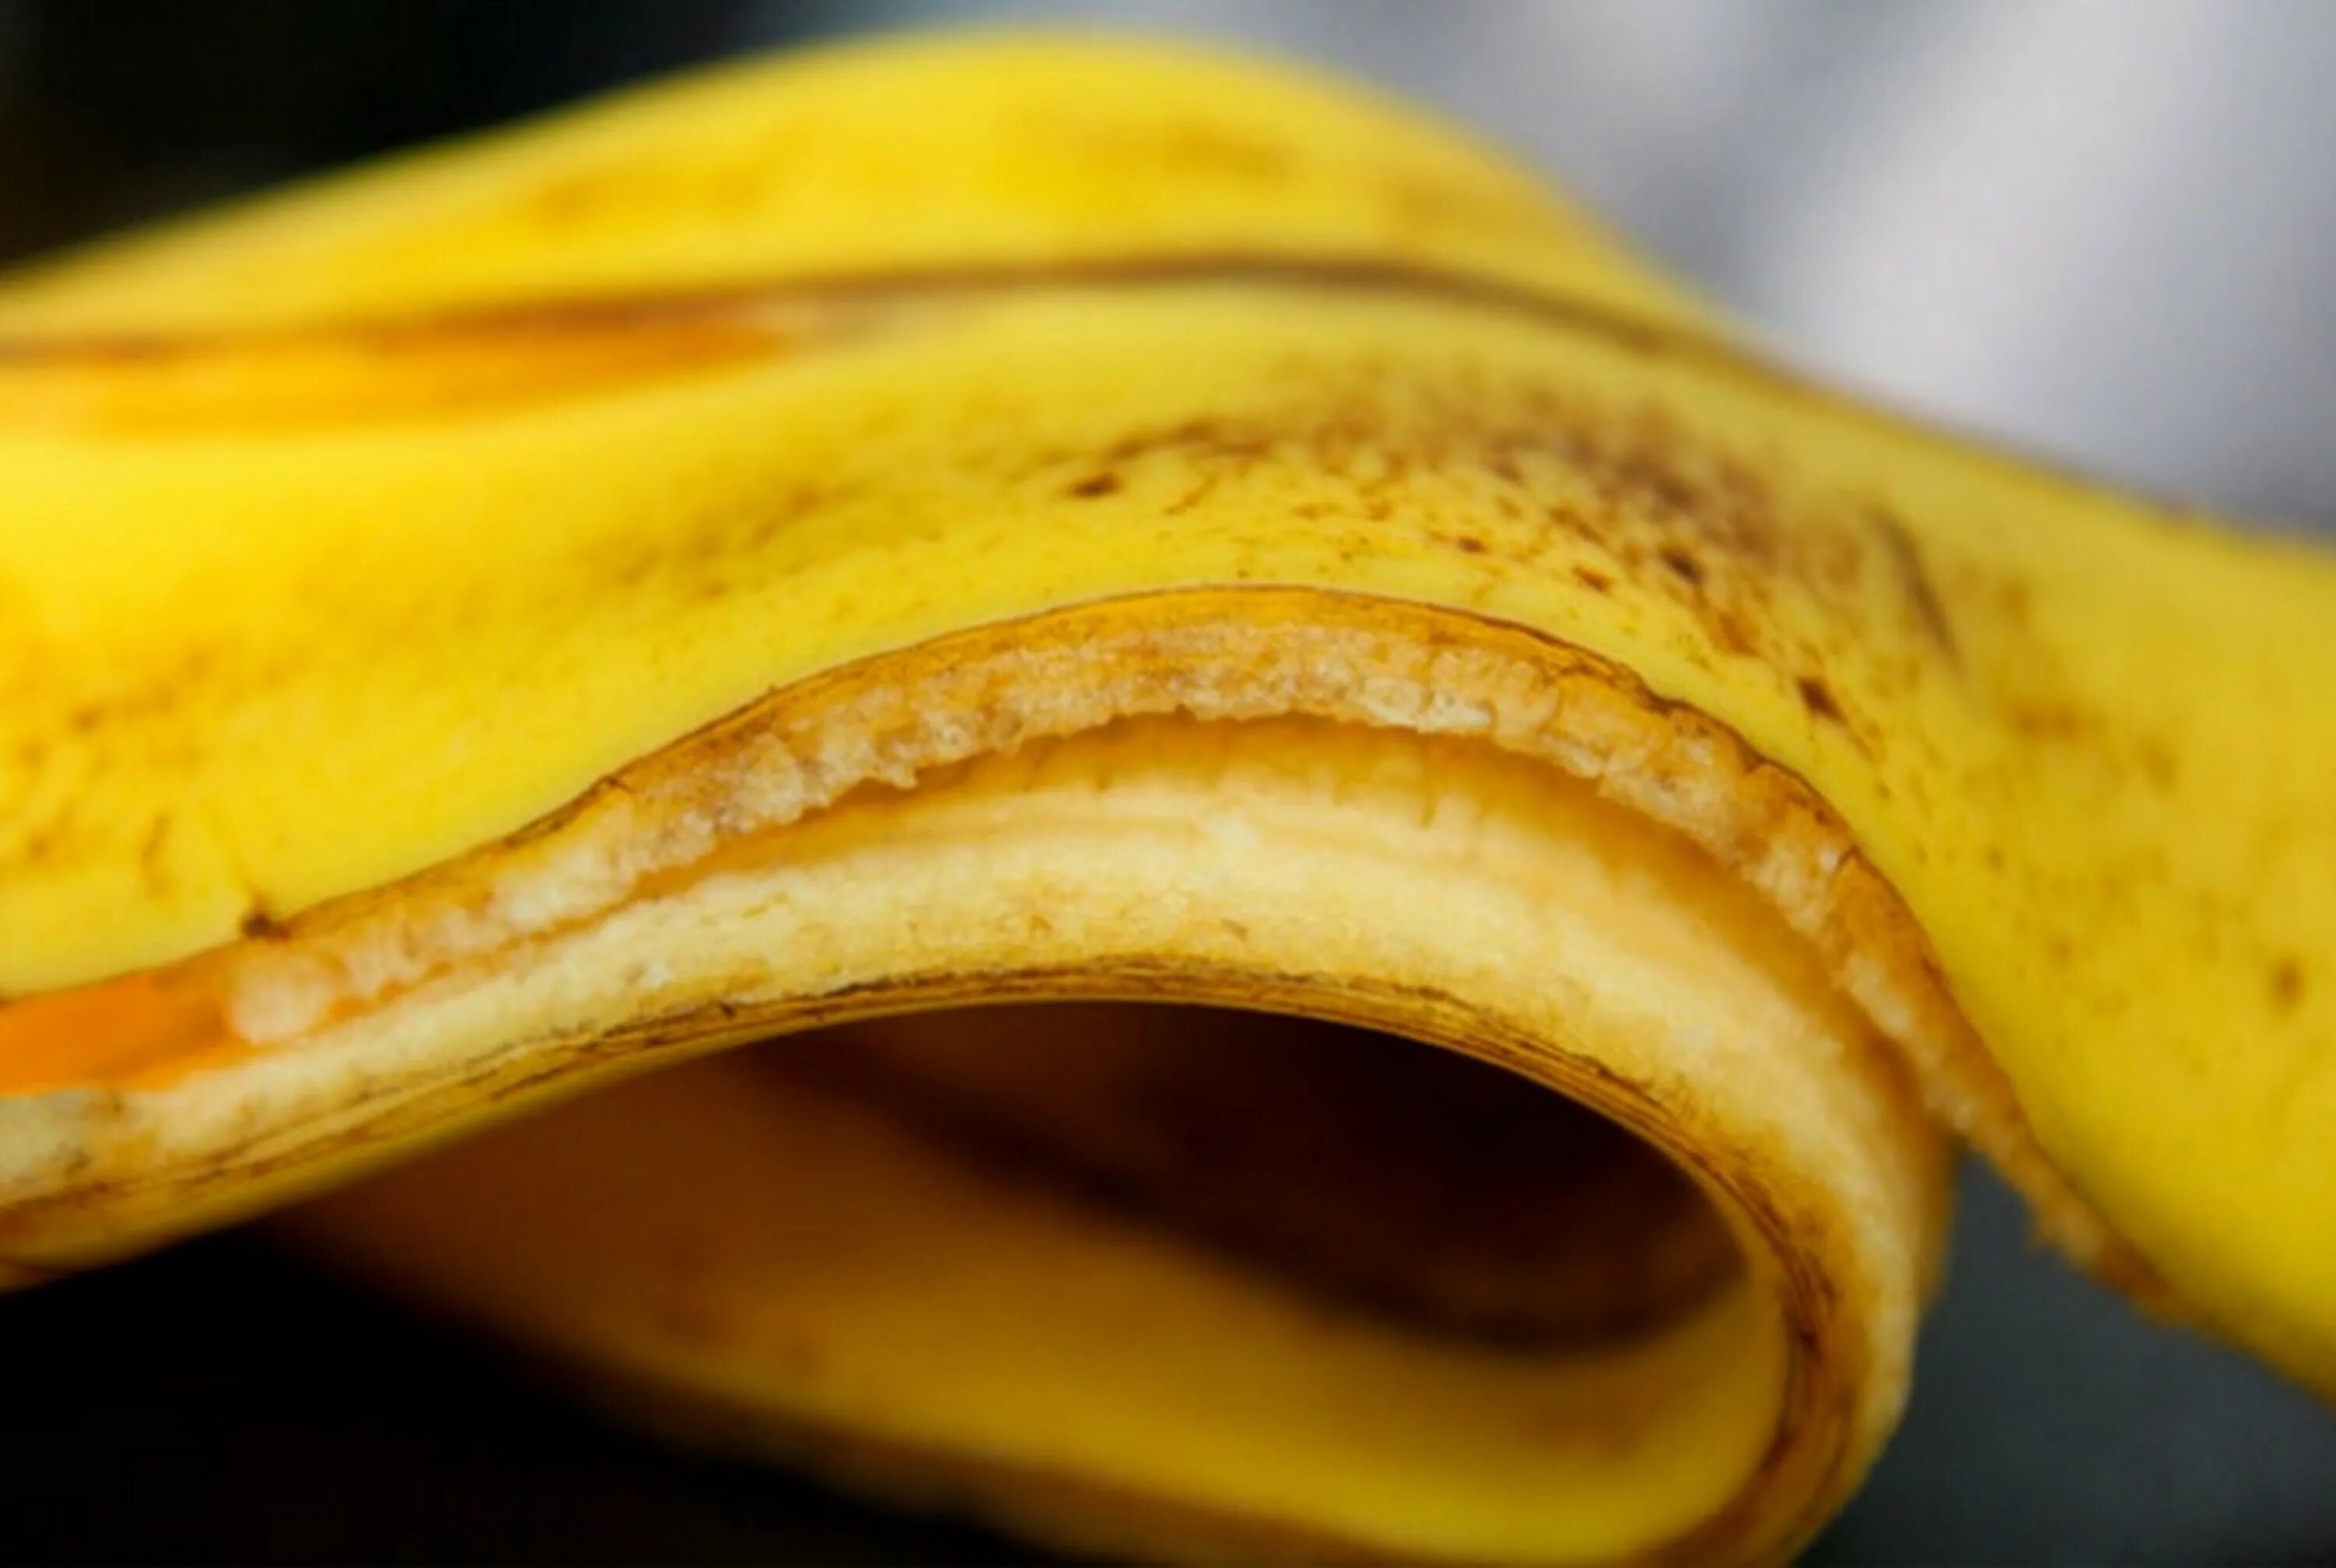 6 кожура. Шкура банана. Шкурка от банана. Банановая кожура. Кожура от банана.